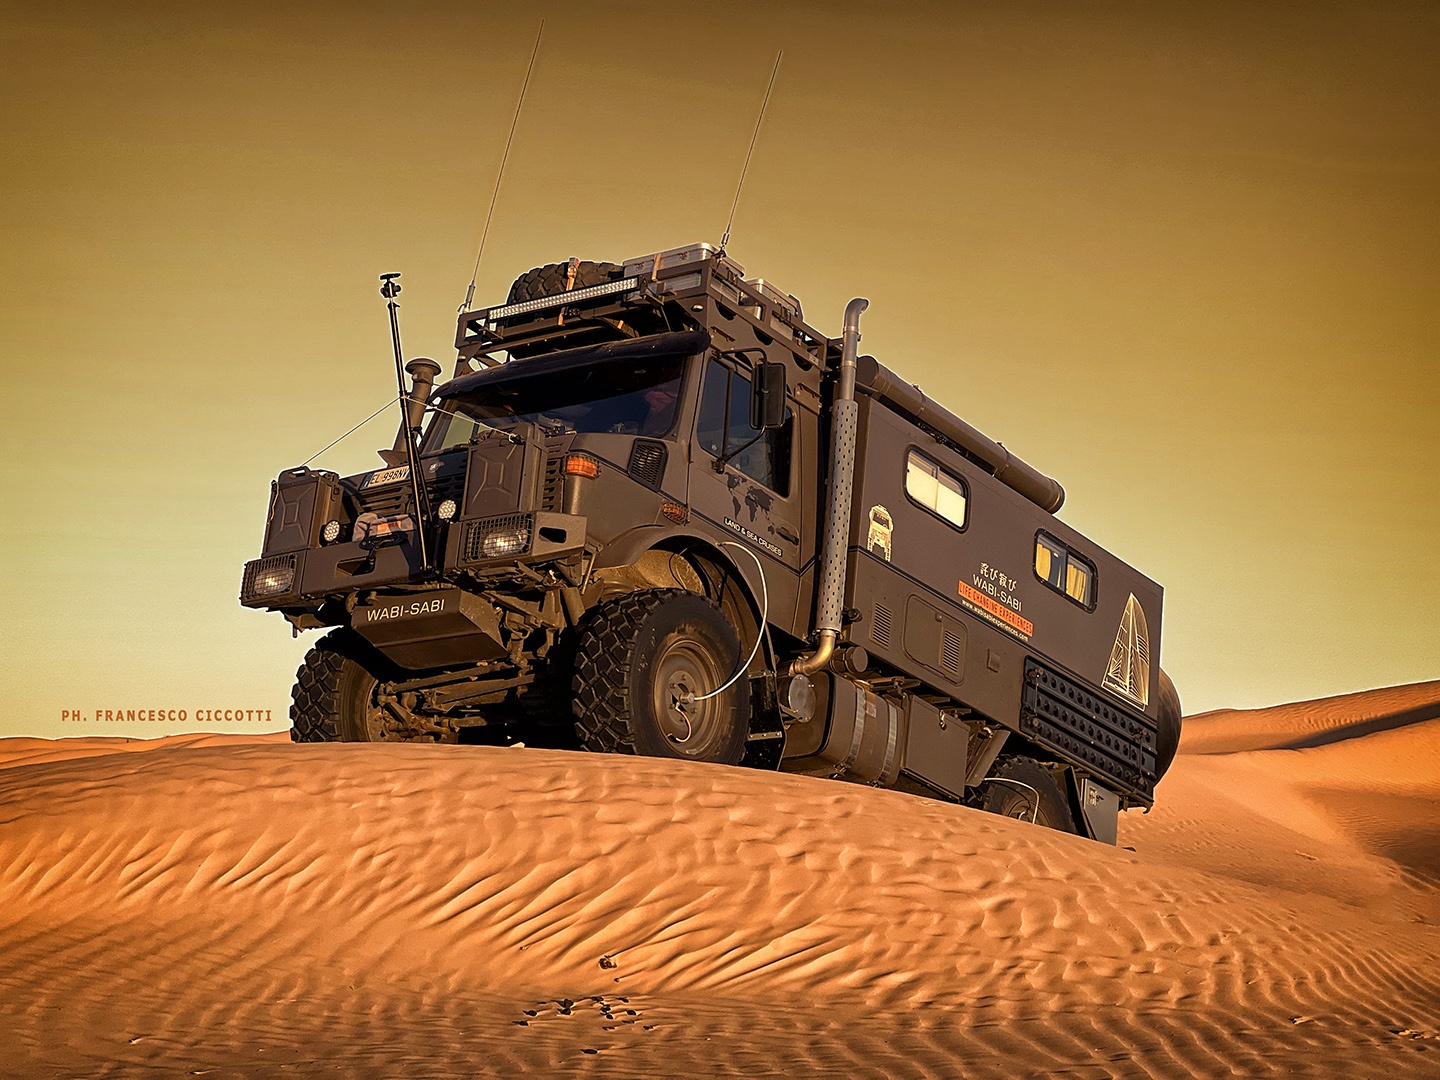 Expedition truck wabi-sabi